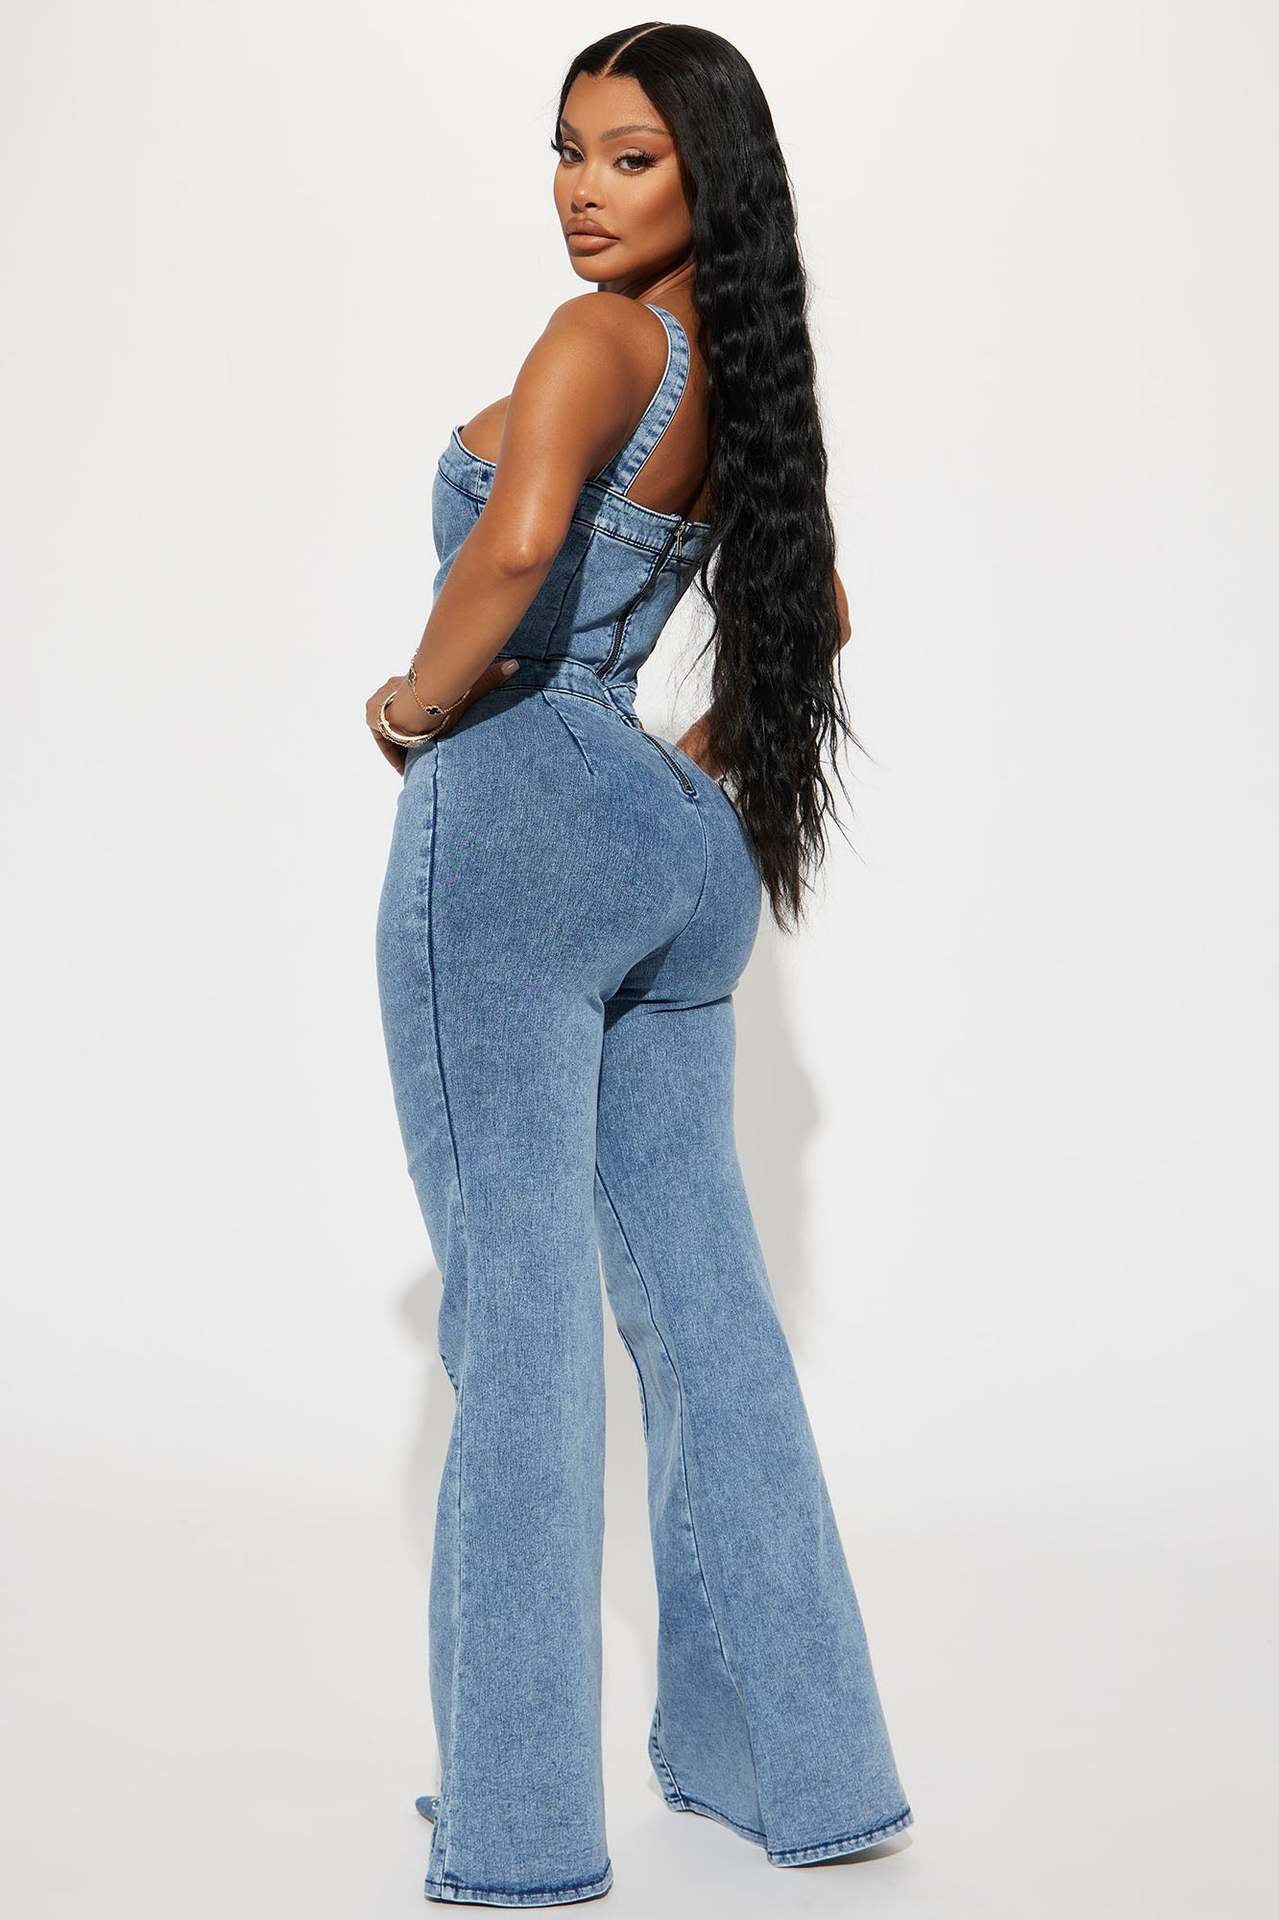 all cotton women's jeans – NextthinkShop